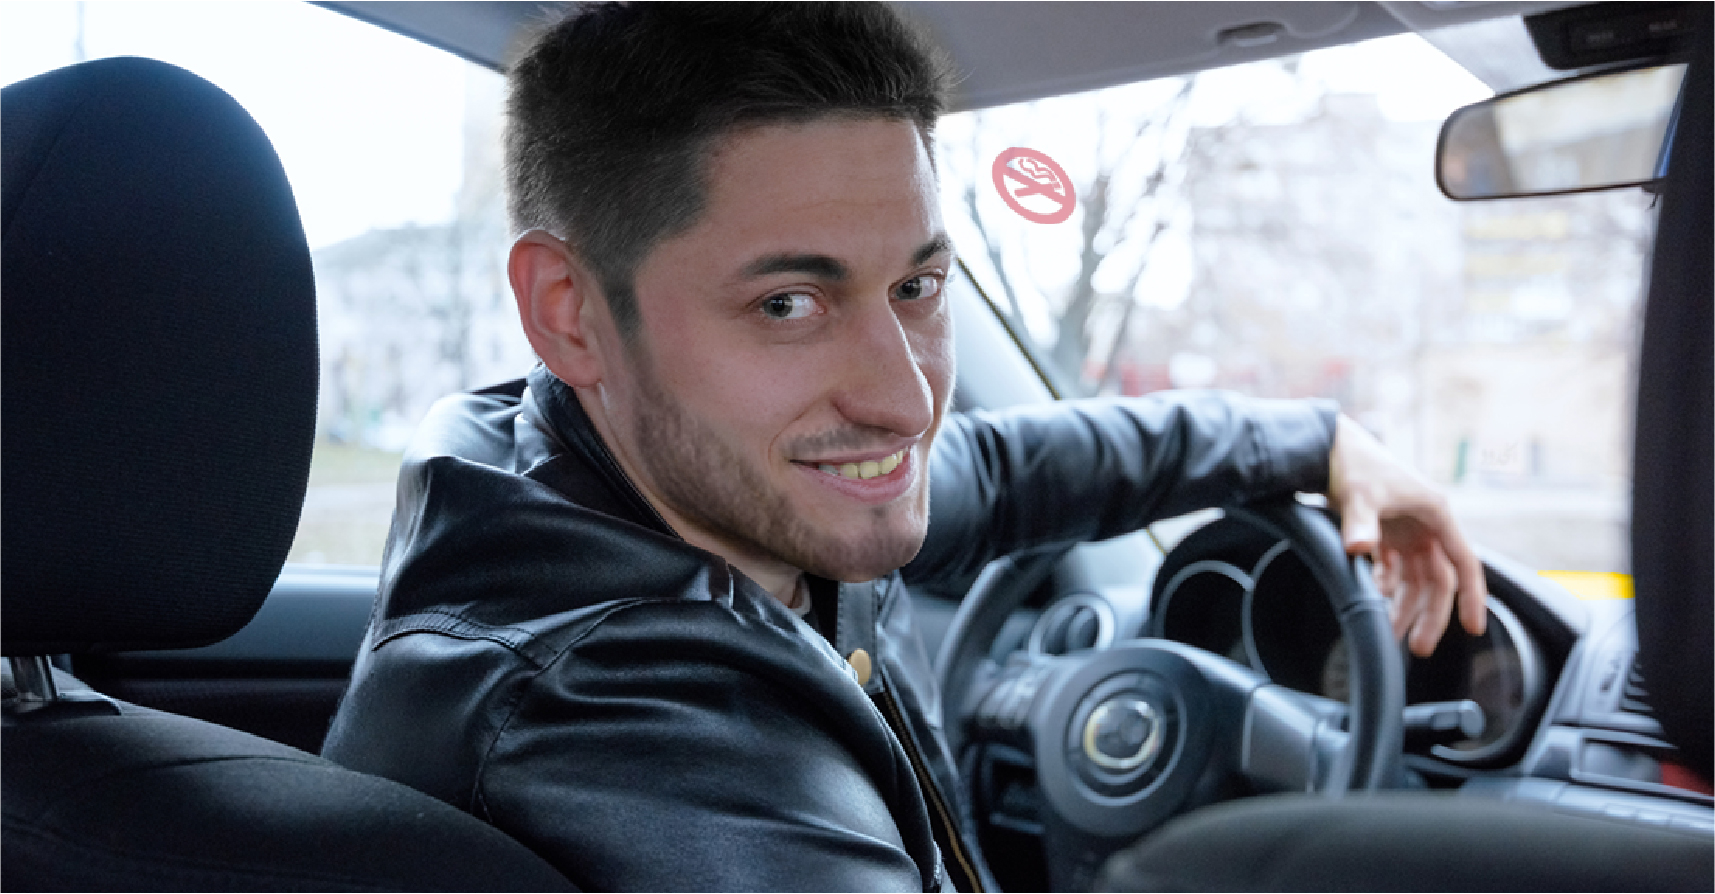 صورة سائق تاكسي يدعم تمكين المرأة ويخصص ٩٠٪ من رحلاته للنساء فقط